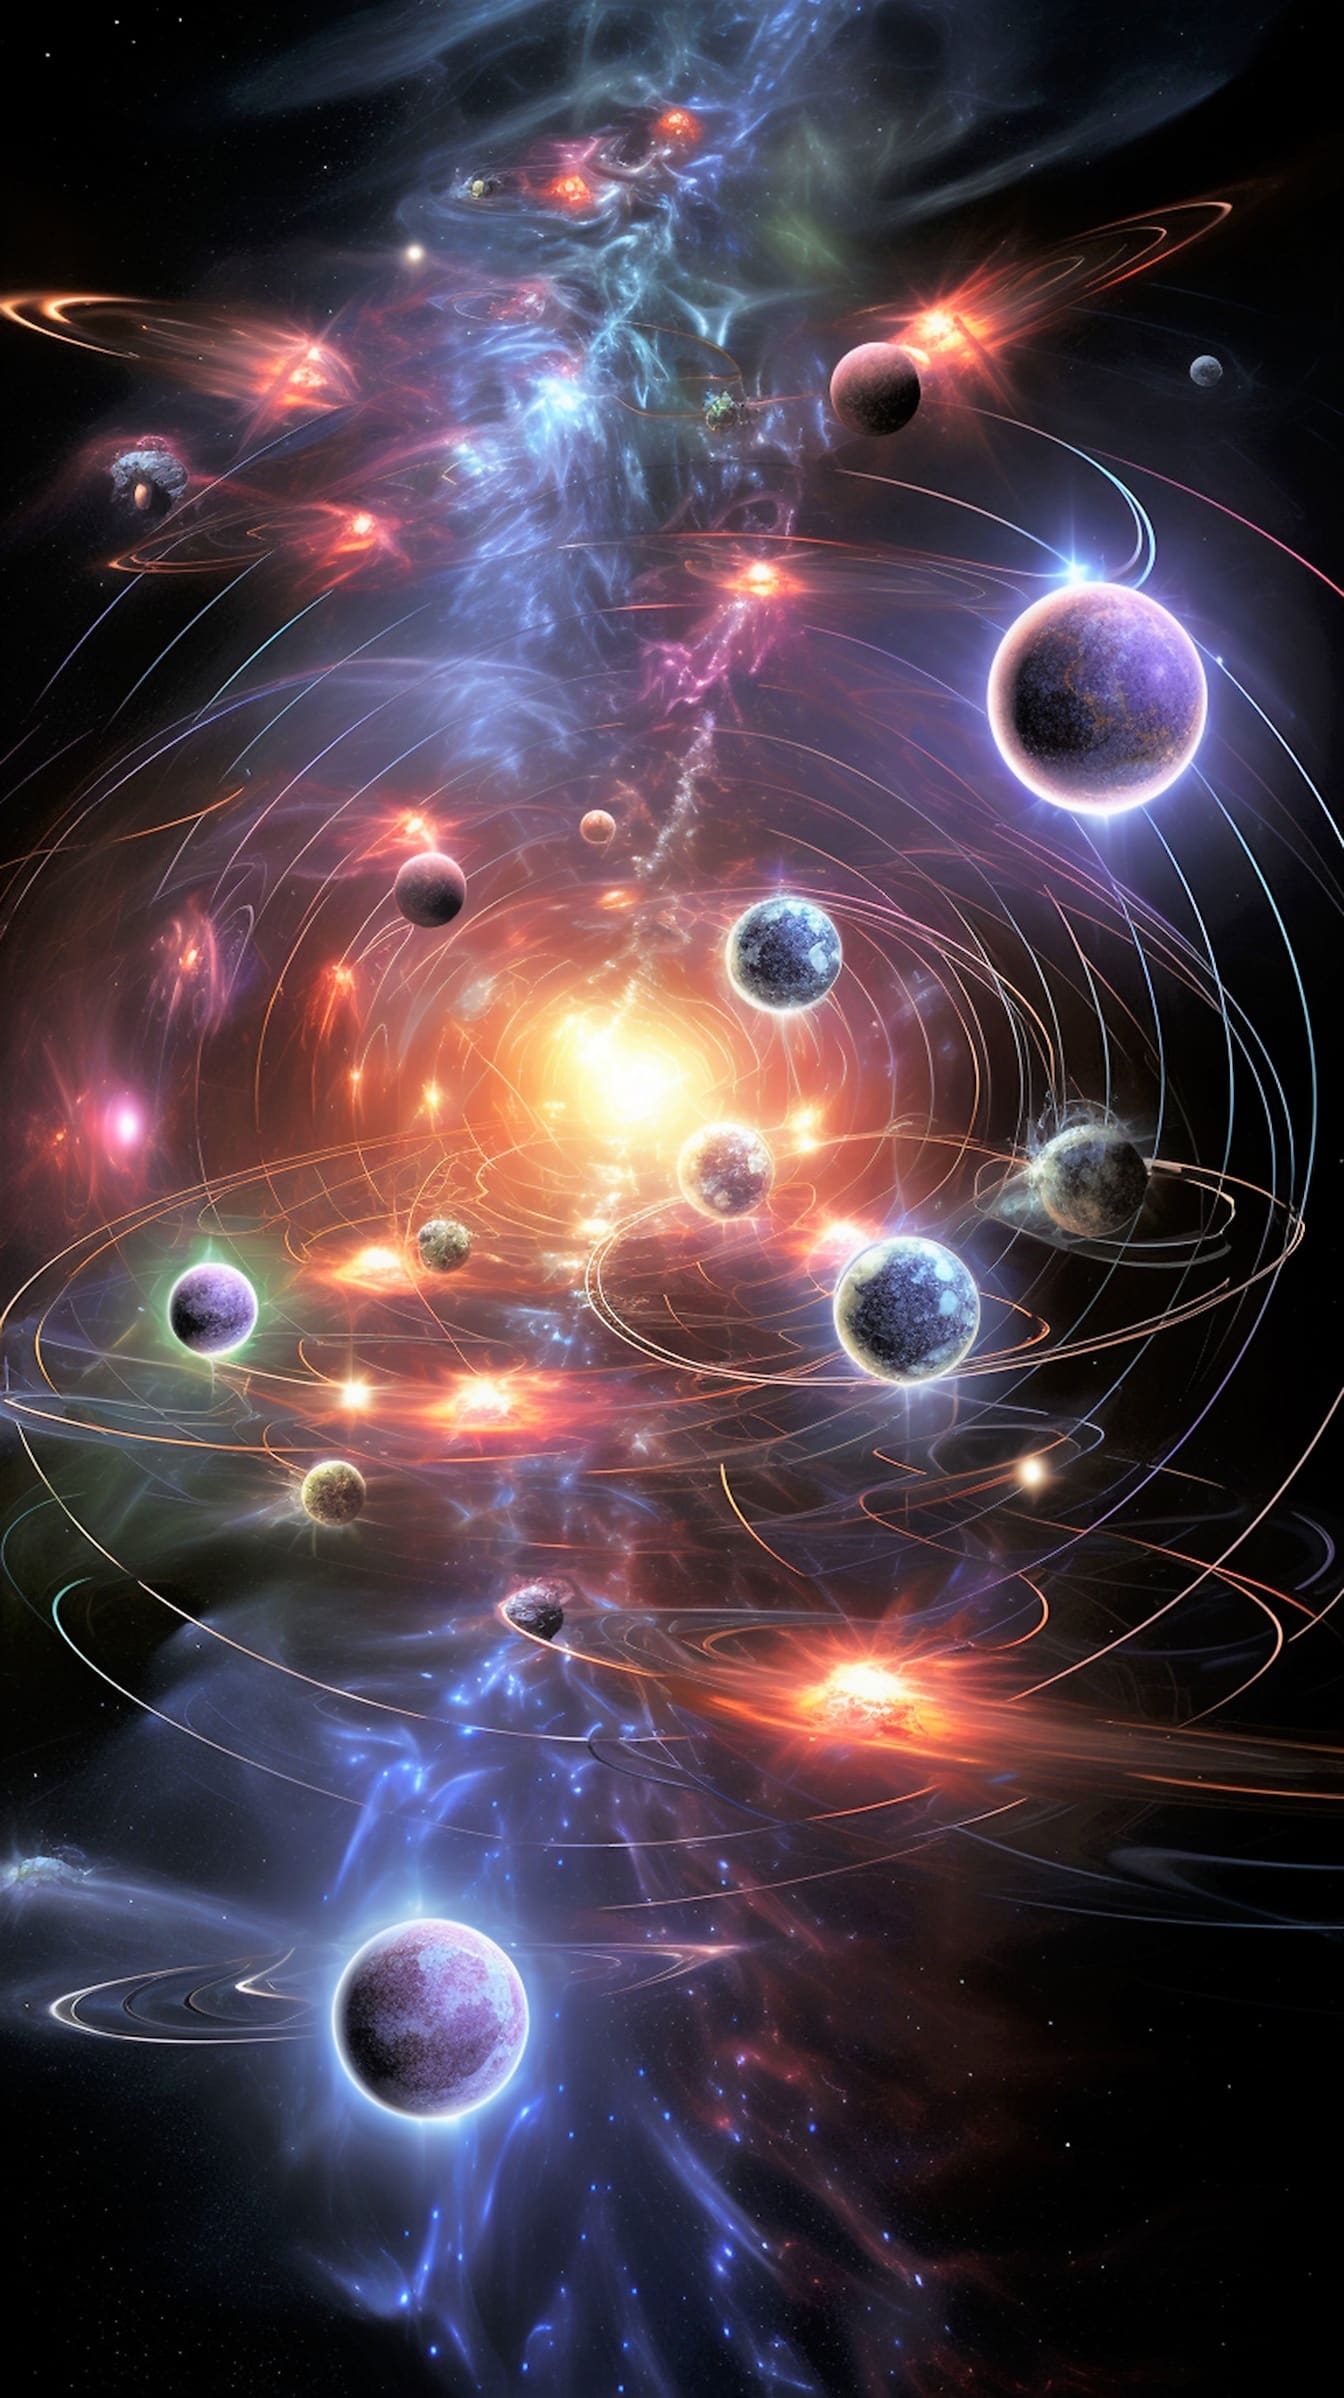 Futuristische abstrakte Astrologiegrafik des Sonnensystems mit Sonne